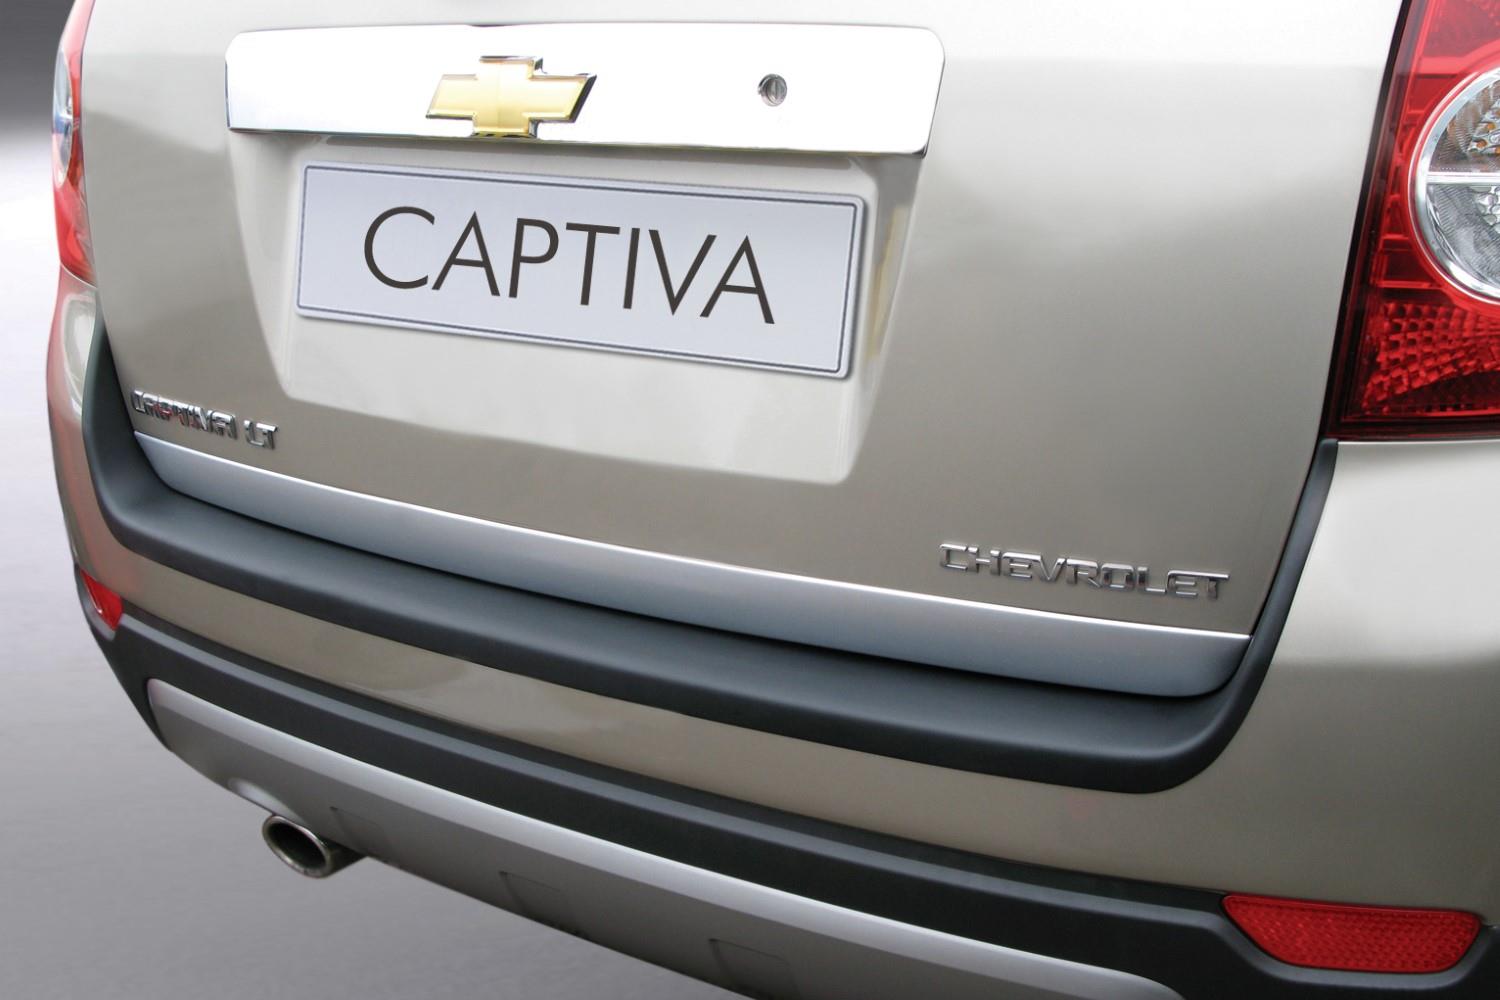 Ladekantenschutz Chevrolet - Daewoo Captiva 2006-2013 ABS - Mattschwarz